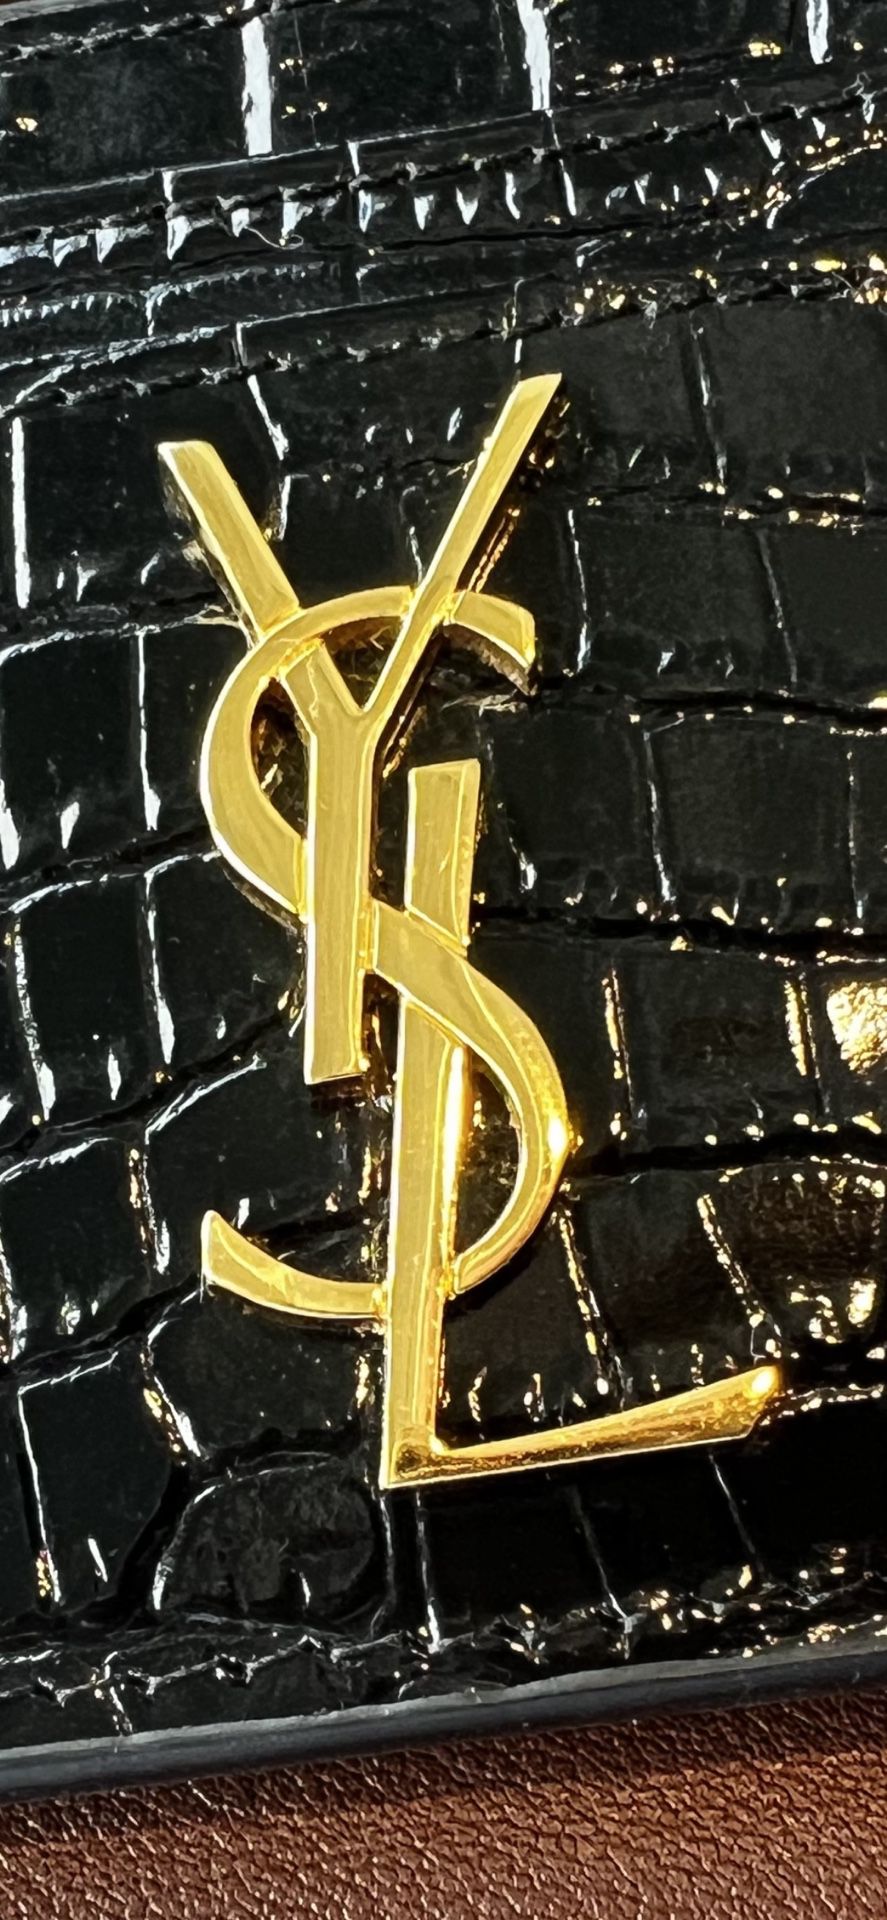 Y S L Black Crocodile Cardholder With Gold Emblem for Sale in Scottsdale,  AZ - OfferUp